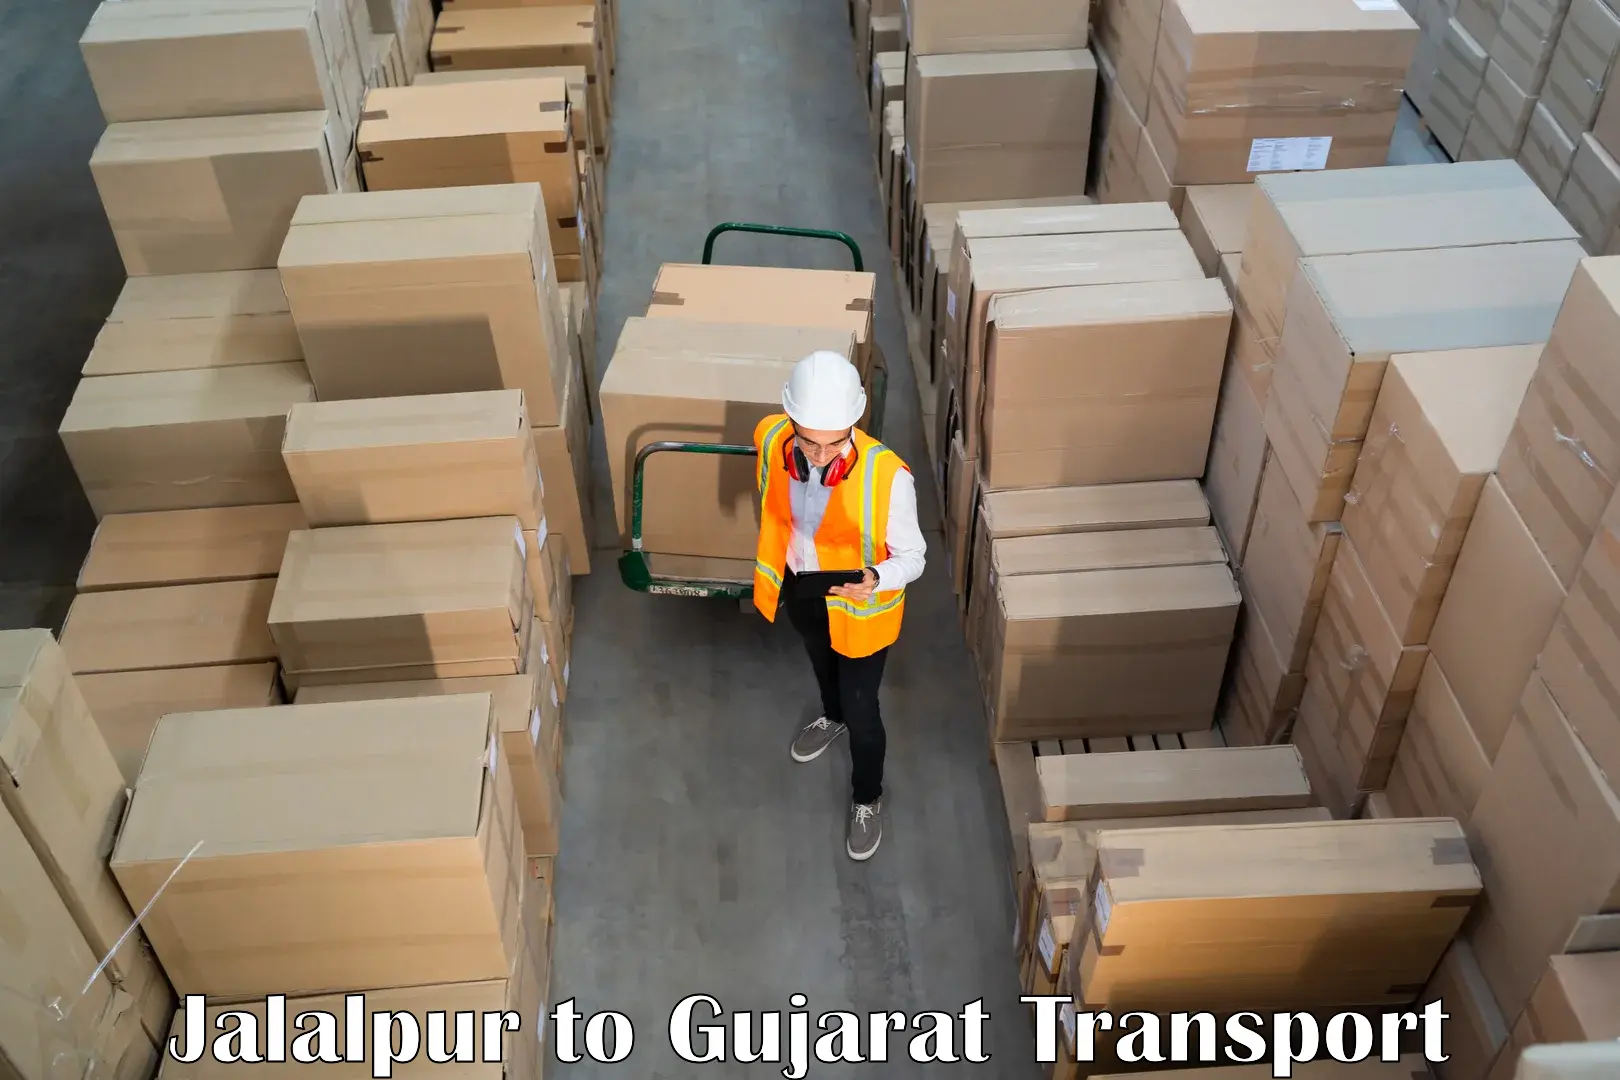 International cargo transportation services Jalalpur to Kalol Gujarat